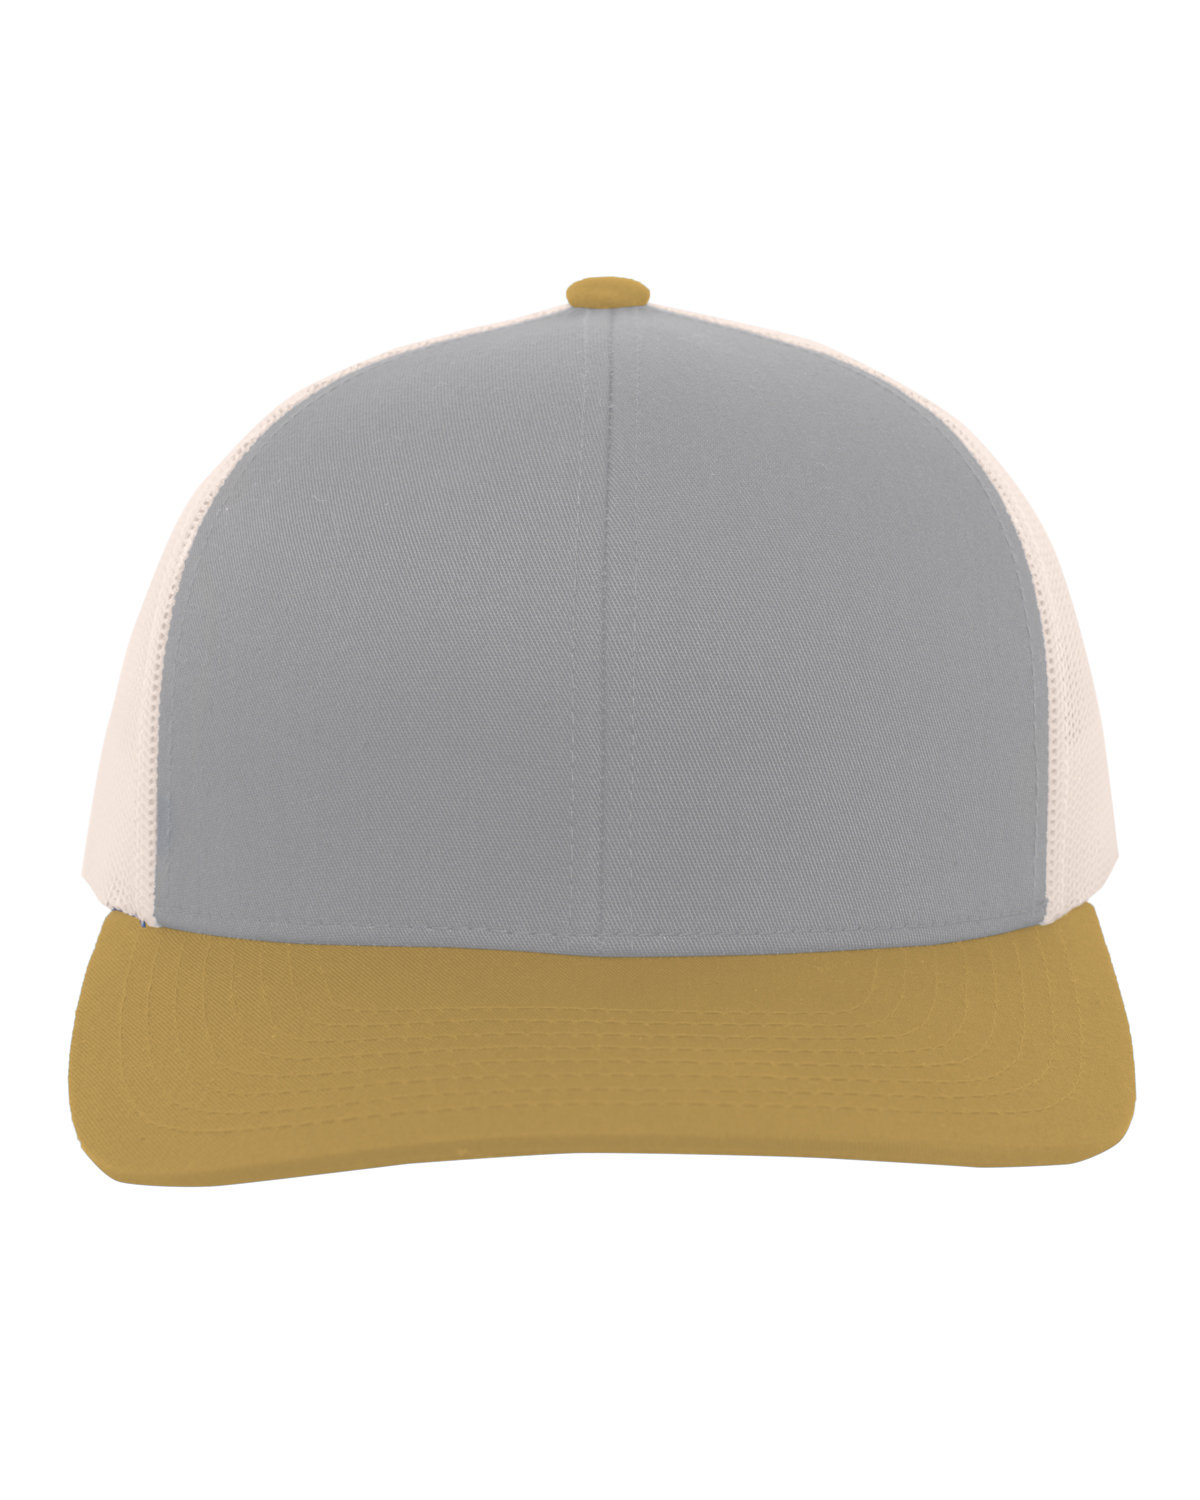 Pacific Headwear Trucker Snapback Hat HT GR/ BG/ AM GD 